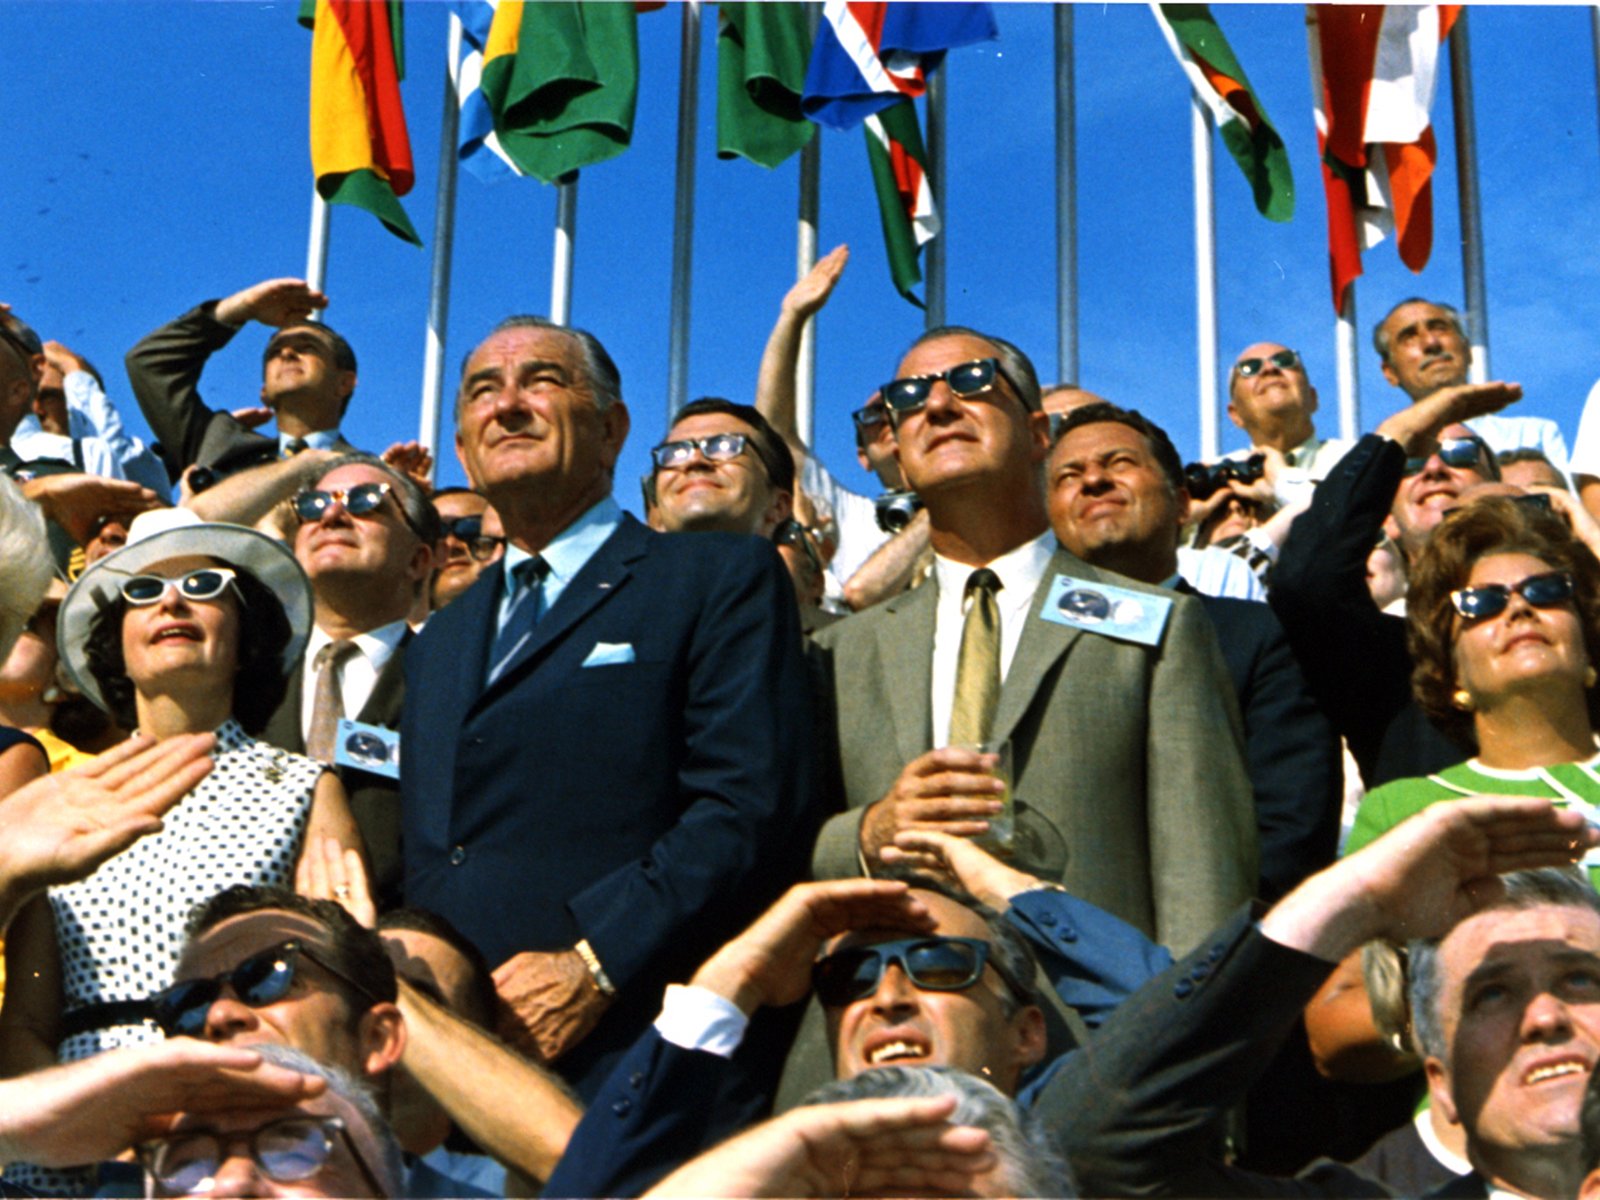 壁纸1600x1200One Giant Leap for Mankind  Spiro Agnew and Lyndon Johnson Watch the Apollo 11 Liftoff 斯皮罗 阿格纽和林登 约翰逊壁纸 阿波罗11号登月40周年纪念壁纸壁纸 阿波罗11号登月40周年纪念壁纸图片 阿波罗11号登月40周年纪念壁纸素材 人文壁纸 人文图库 人文图片素材桌面壁纸